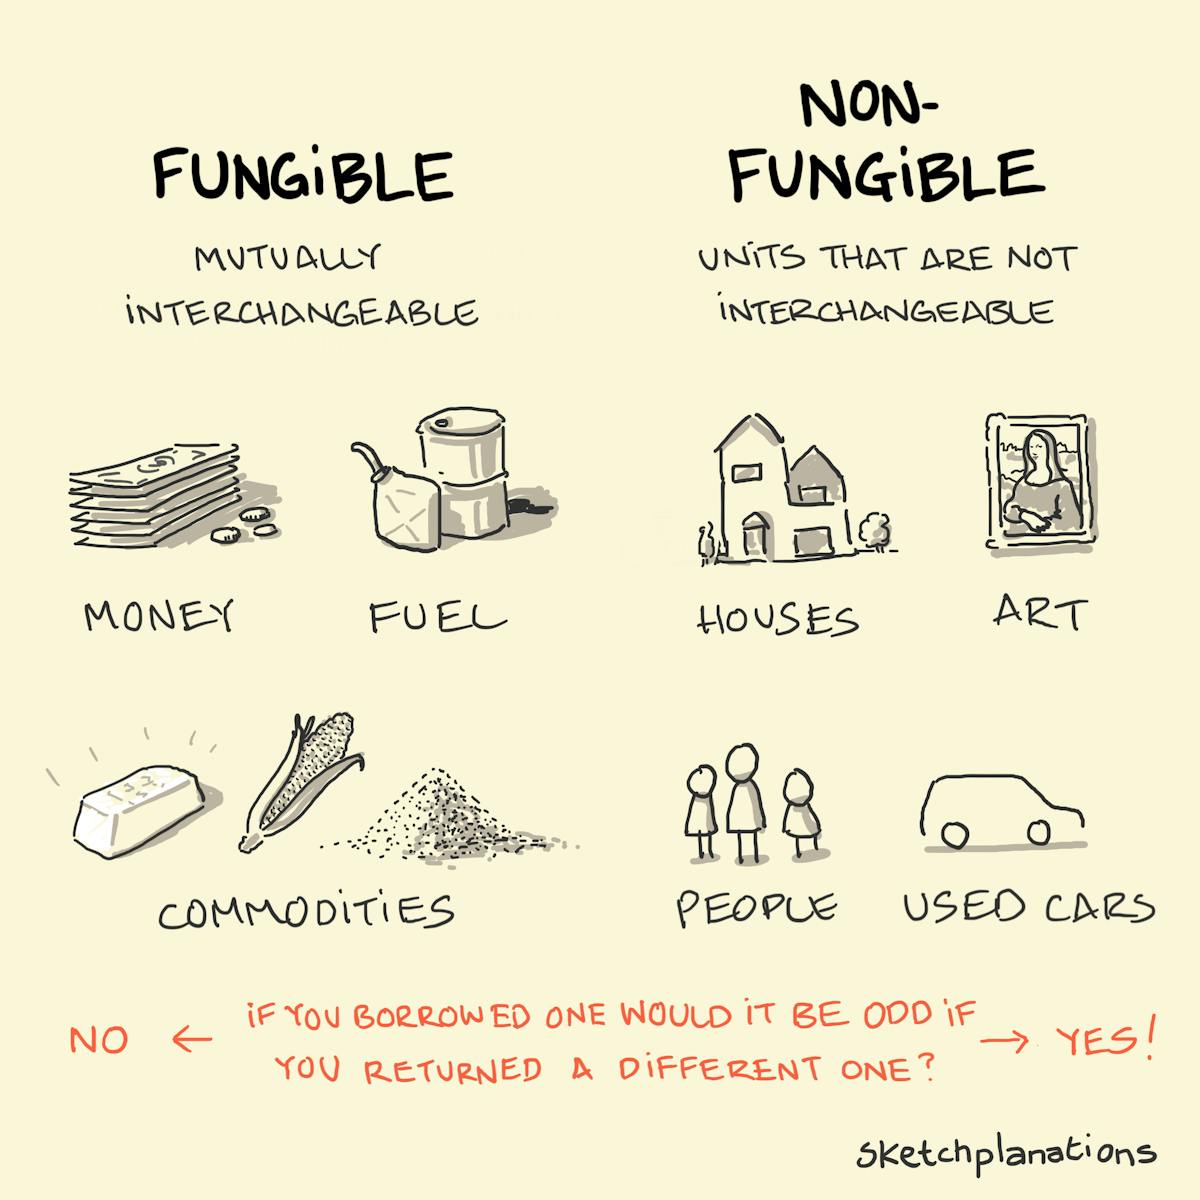 Fungible - non-fungible - Sketchplanations